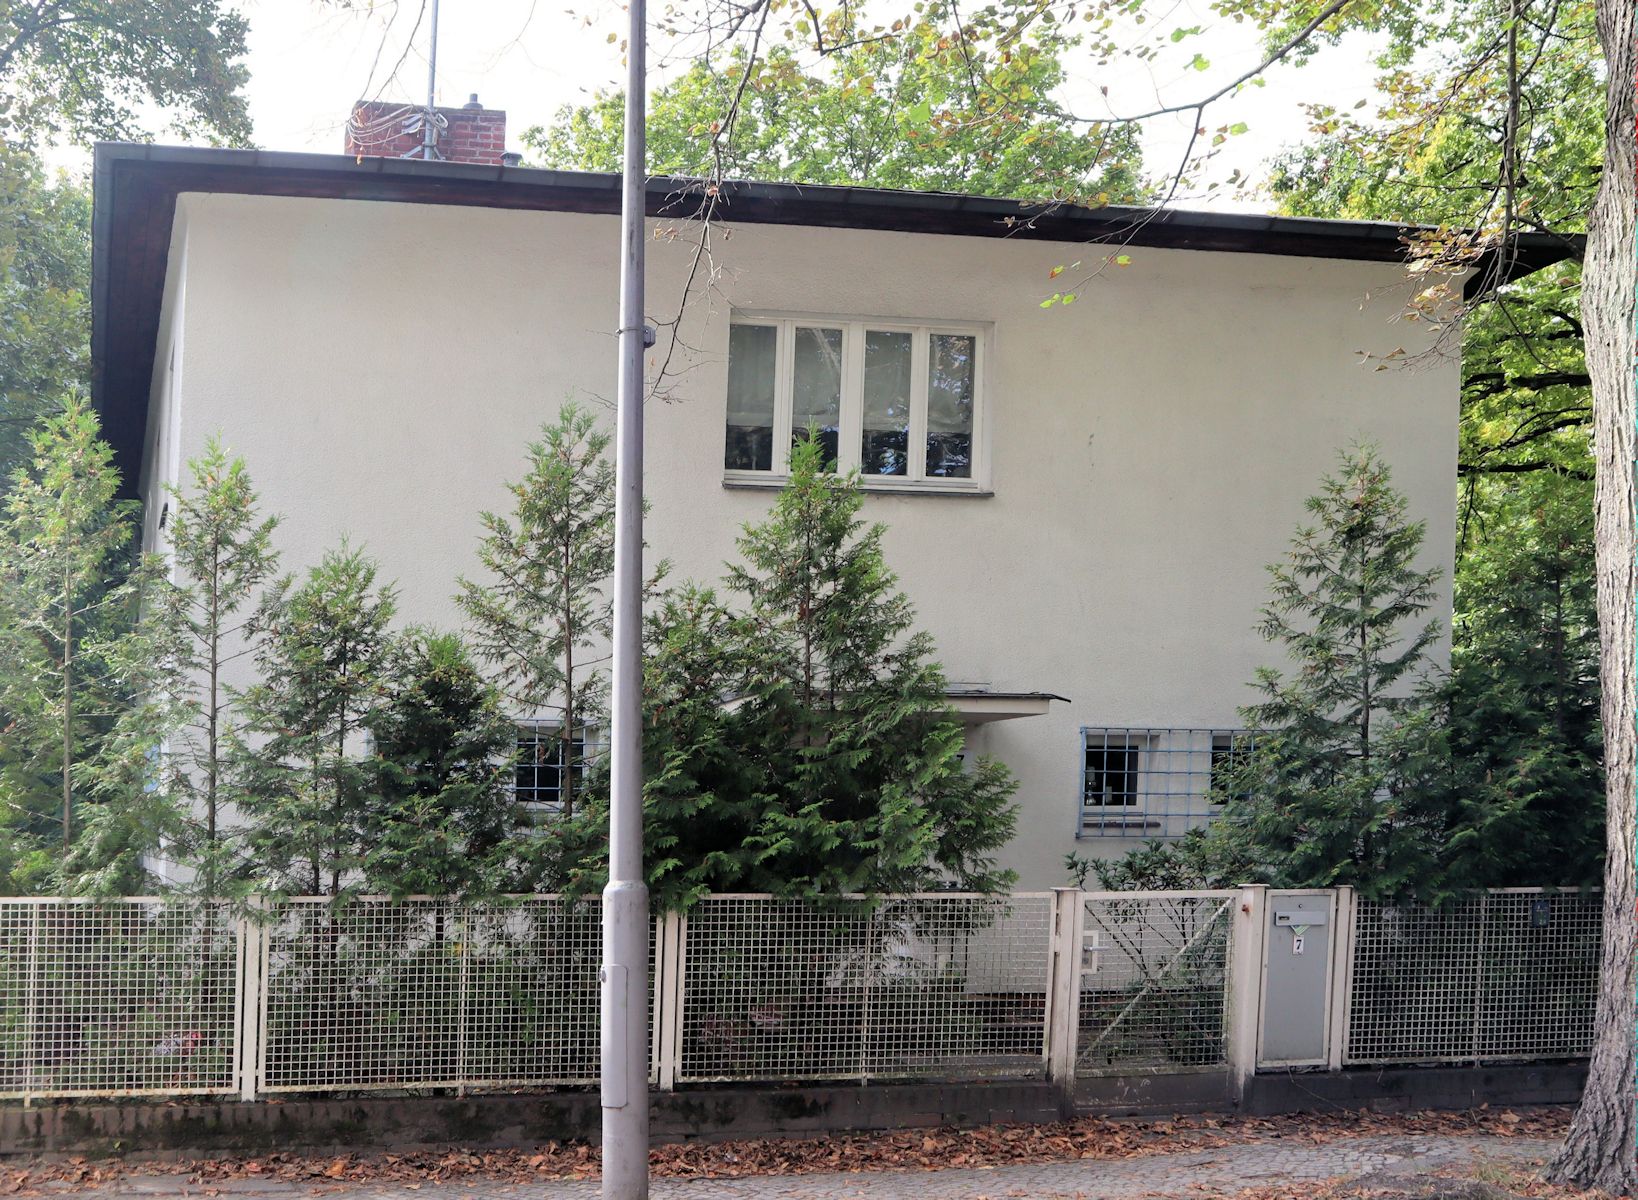 Kleppers Wohnhaus von 1935 bis 1938 in Berlin-Steglitz, mit Gedenktafel